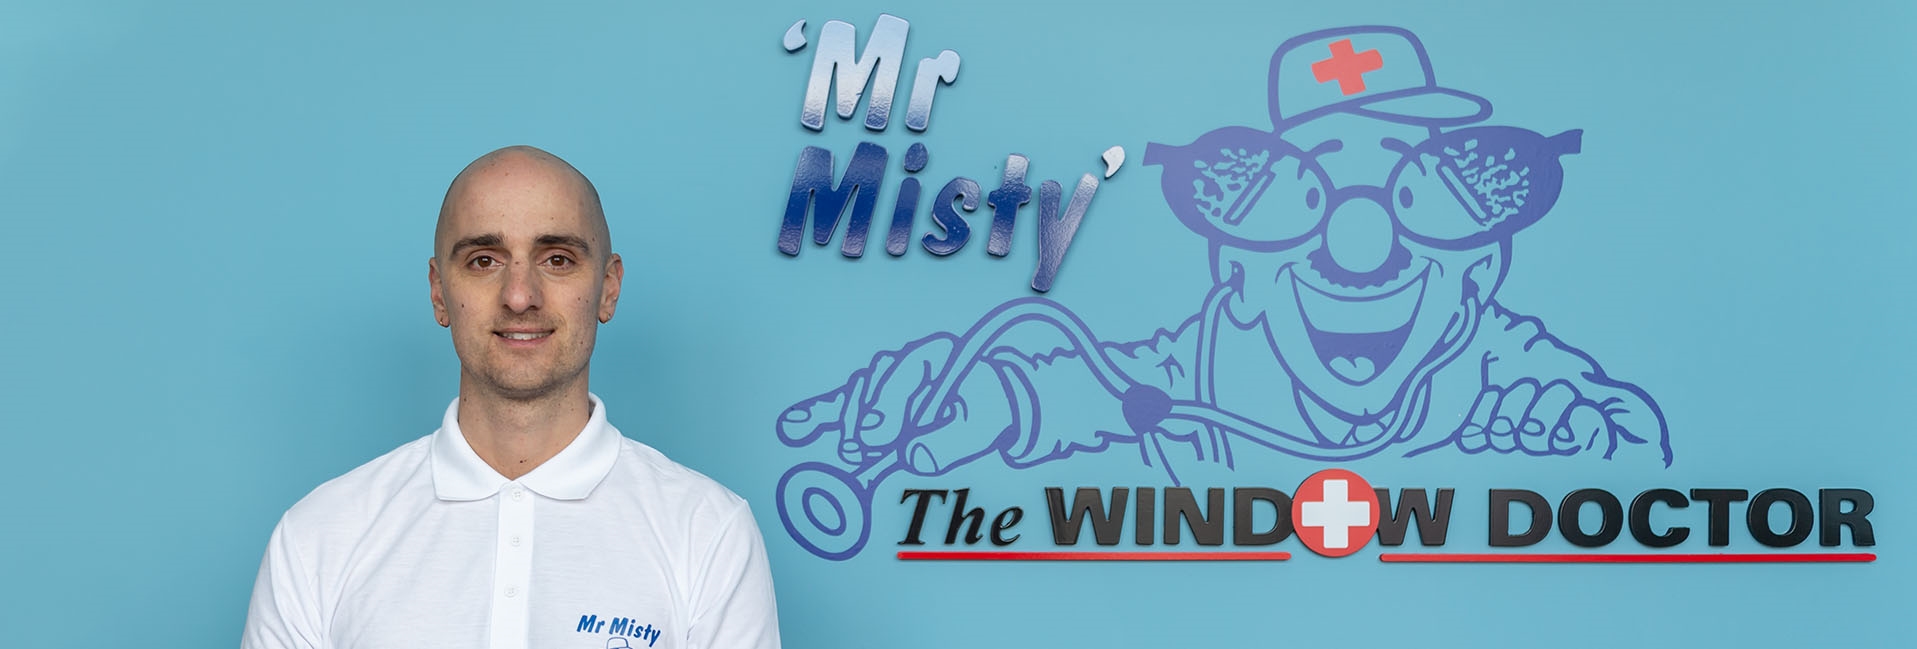 Mr Misty